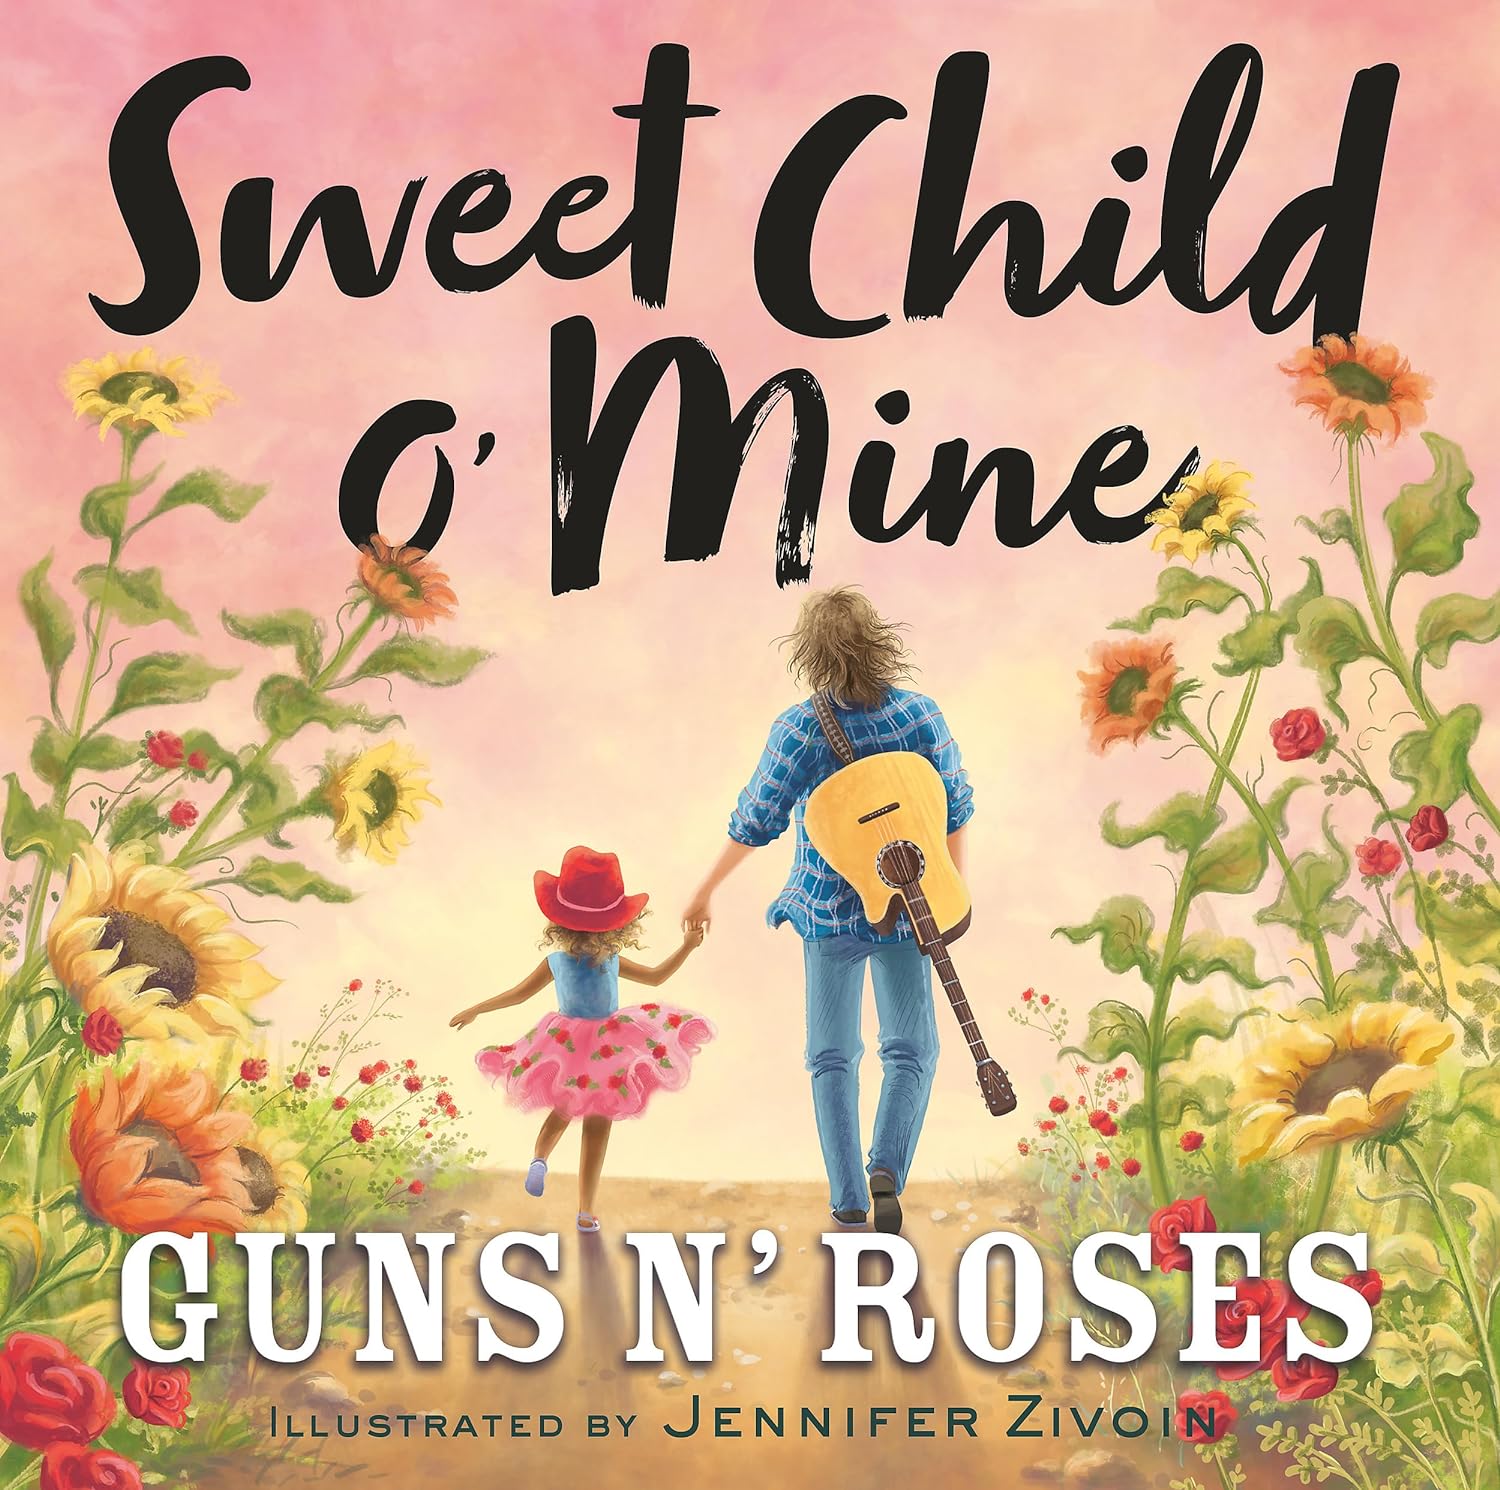 Sweet Child O' Mine (Guns N' Roses) (Kids Book)